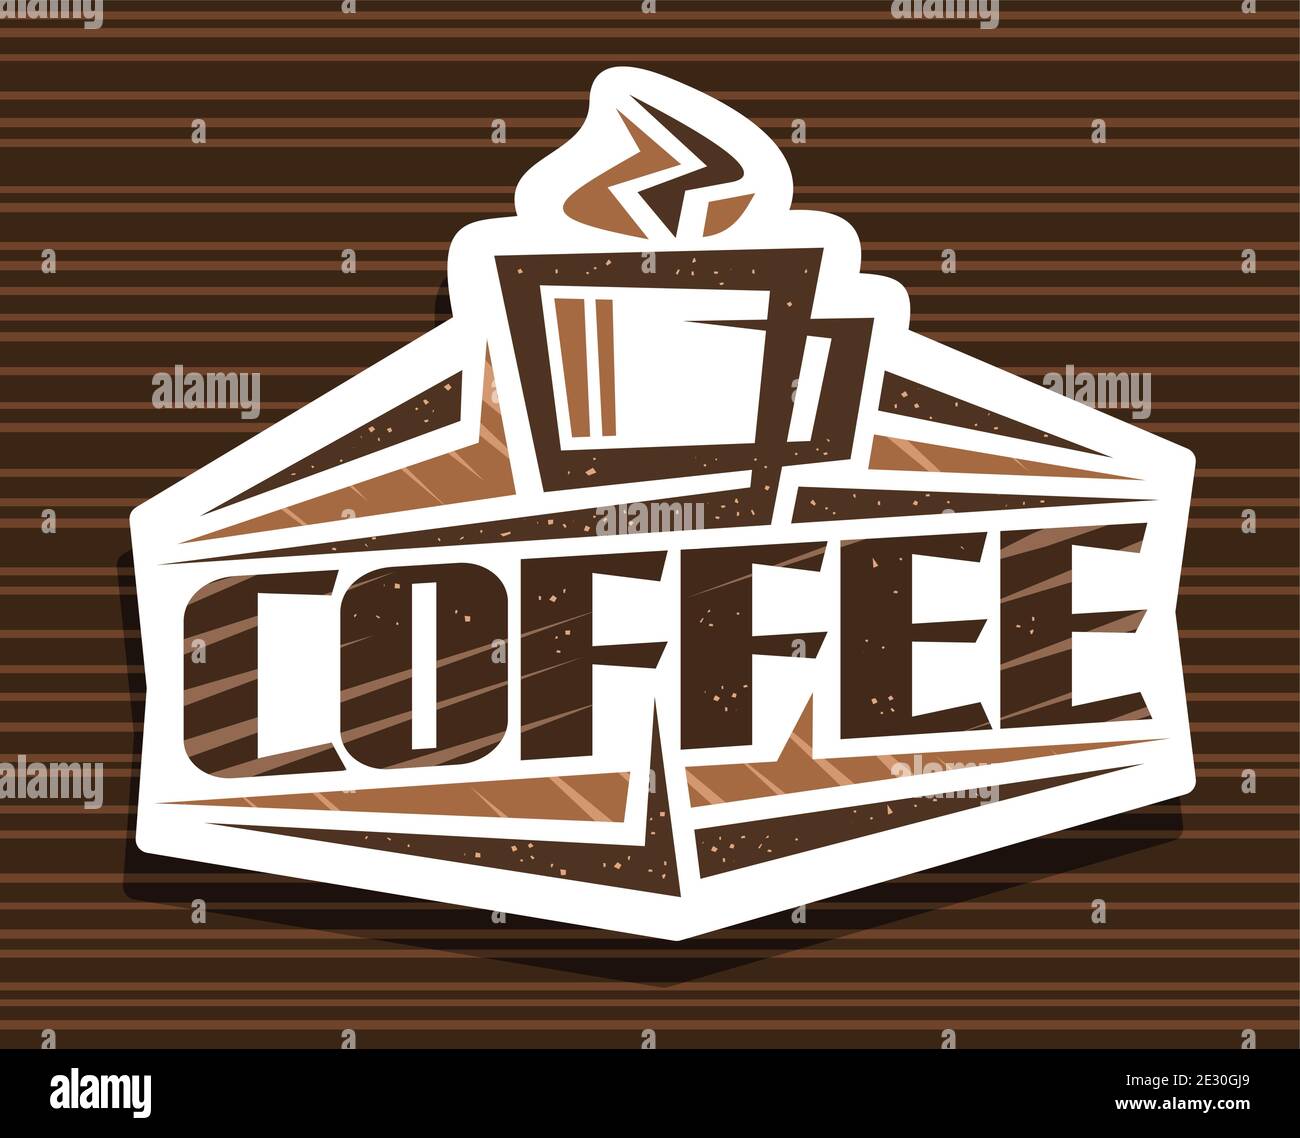 Vektor logo für Kaffee trinken, dekorative Namensschild für Cyberpunk Café mit outline Abbildung: gedämpfte Kaffeetasse, scharfen Design Elemente und beschäftigungsprojekt Stock Vektor